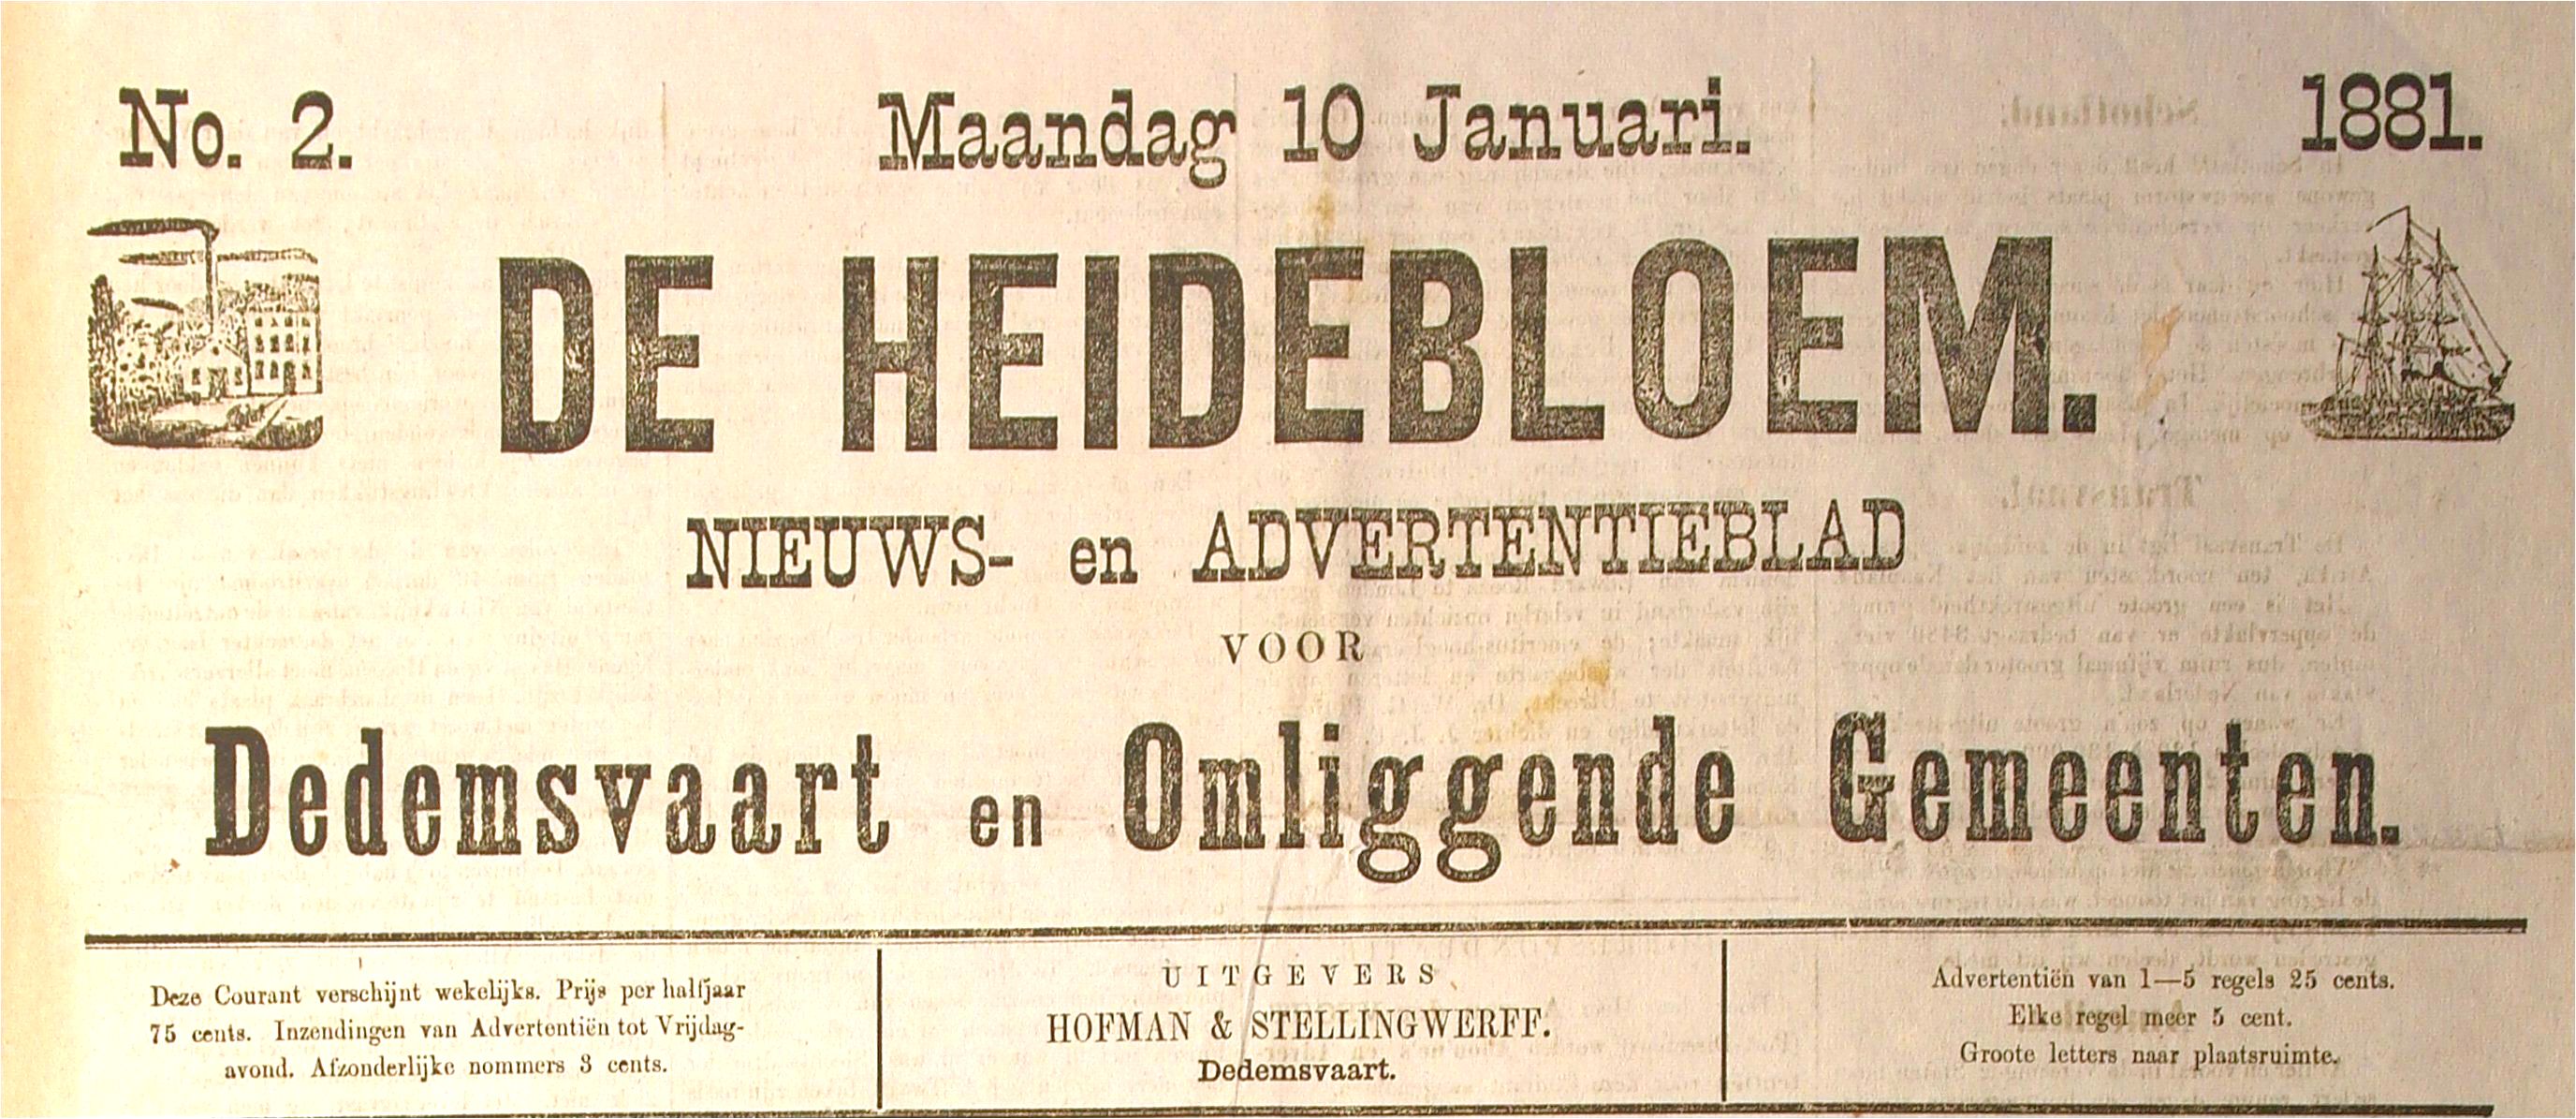 1881 Heidebloem.jpg